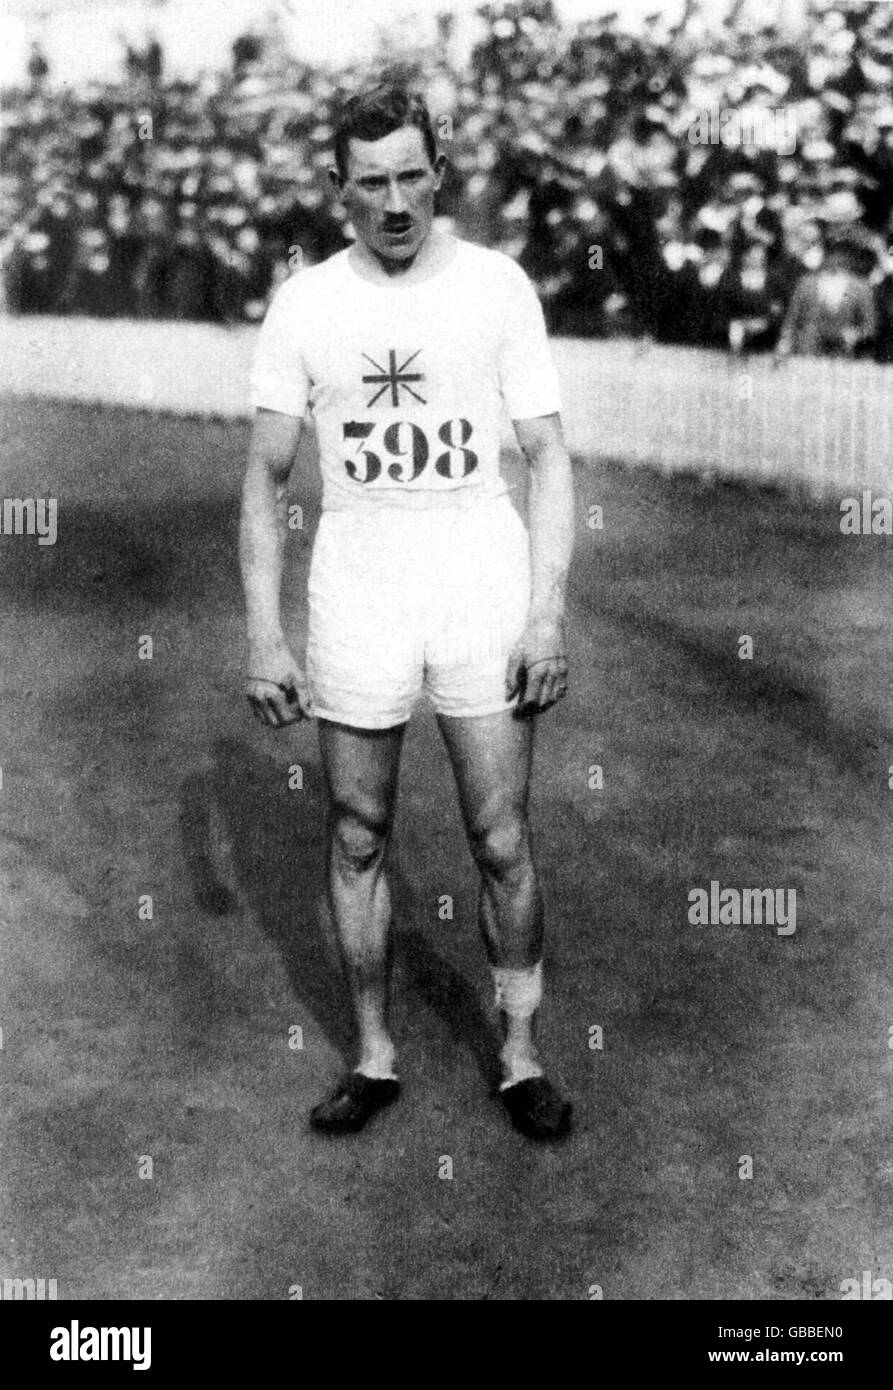 Atletica - Giochi Olimpici di Anversa 1920 - Men's 800m - finale. Albert Hill, Gran Bretagna, medaglia d'oro Foto Stock